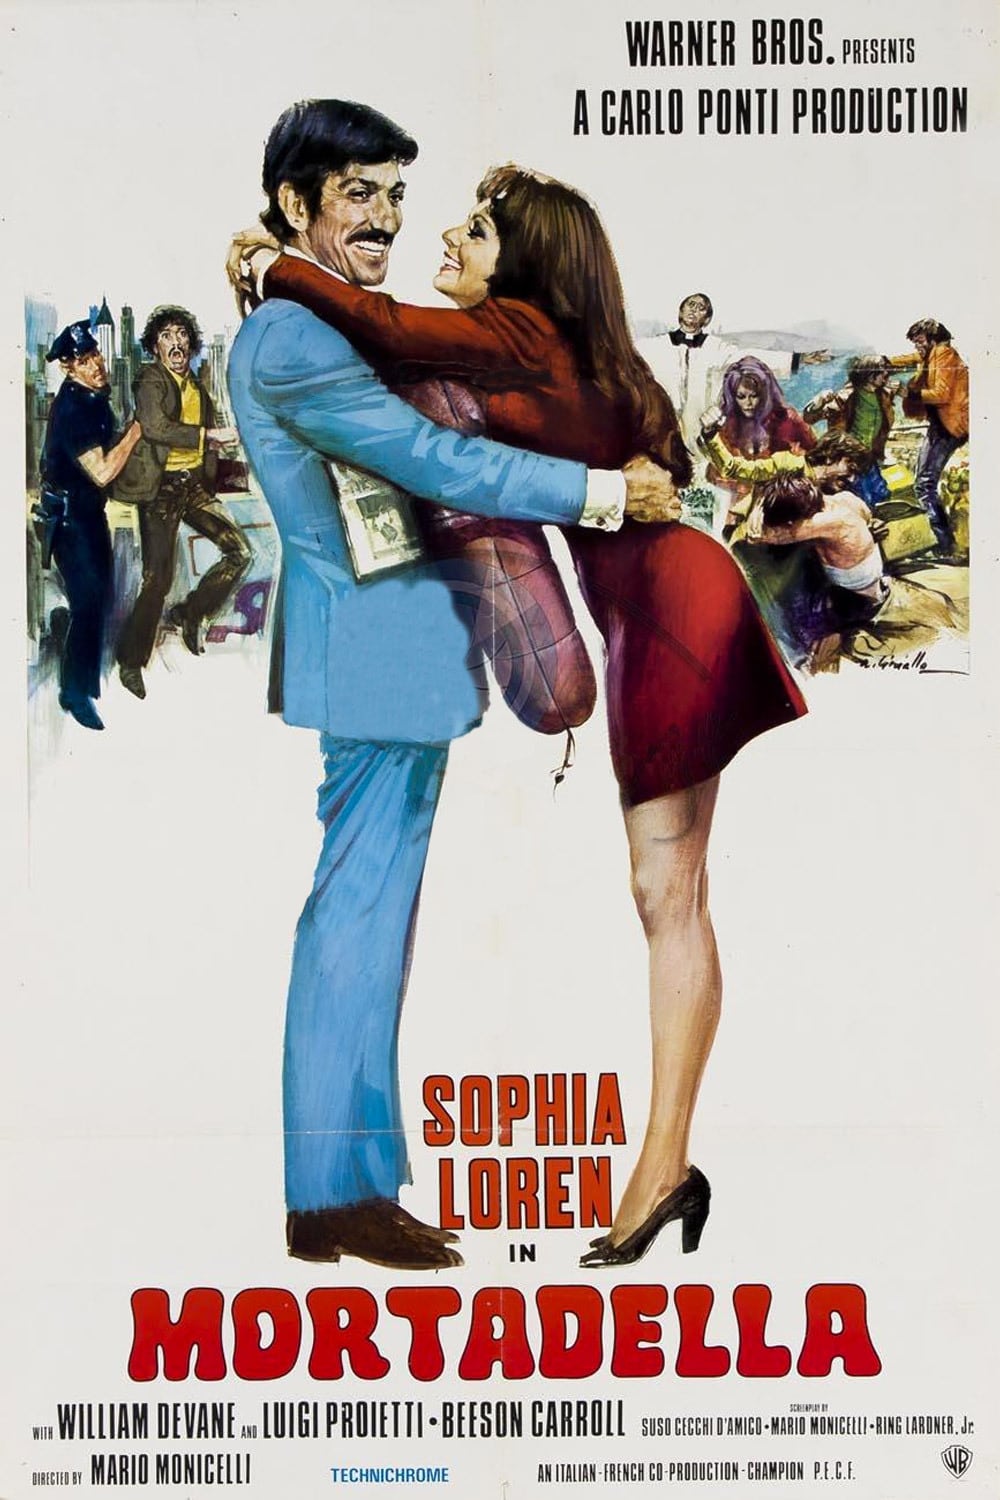 Plakat von "La mortadella"